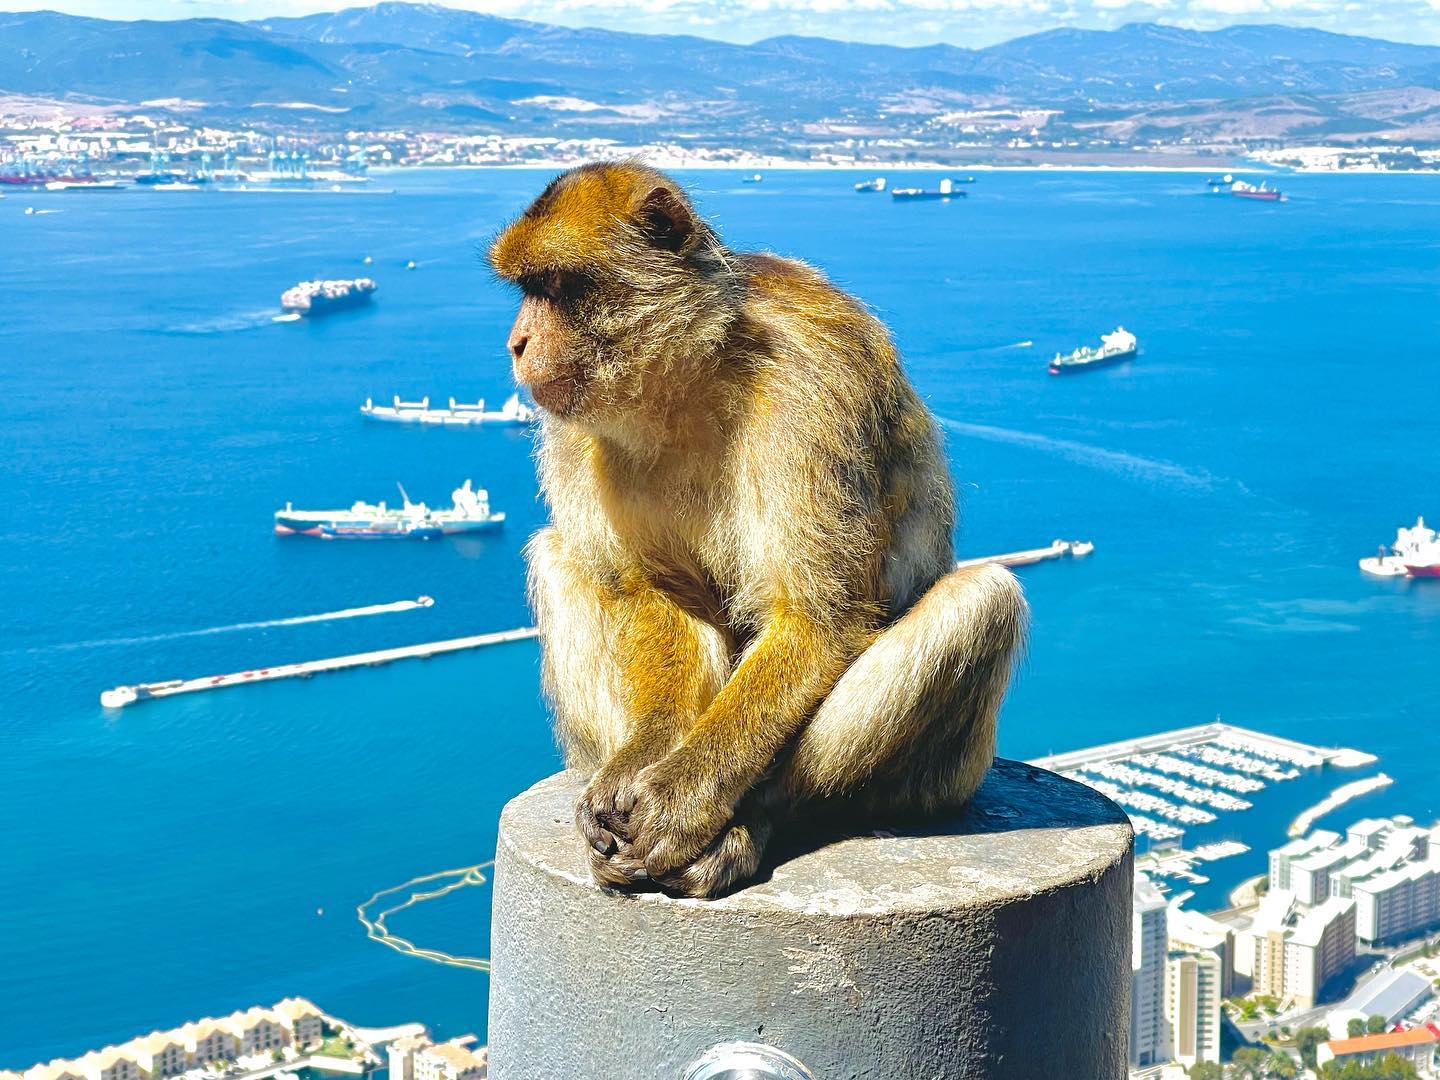 Avrupa’da tek maymun türü. Kuyruksuz Barbary Macaque Maymunları. Çok tatlılar ancak çantalara 💼 şapkalara 🎩 iyi sahip çıkın. 😀 .
.
.
.
.
.
. #nasilgezdim #gibraltar #monkey #maymun #iphoneonly #gezenbilir #travelphotography #naturephotography #gezinotları #gezimanya #milliyetrota #cebelitarık #nereyegitsek #ilovetravel #travelers #gezgin #gezilecekyerler #geziyorum